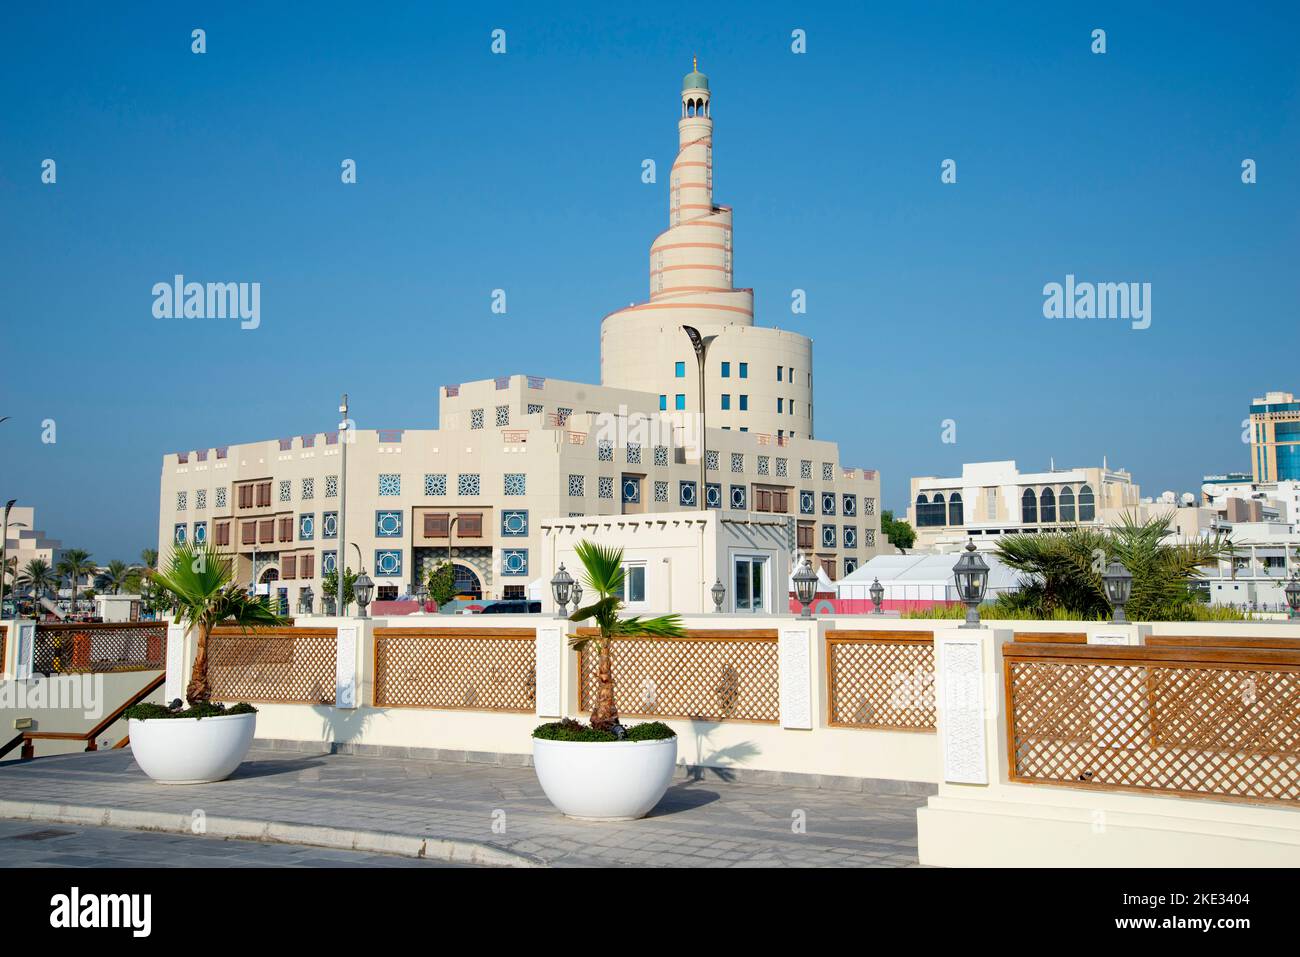 Abdullah Bin Zaid Al Mahmoud Centre culturel islamique - Doha - Qatar Banque D'Images